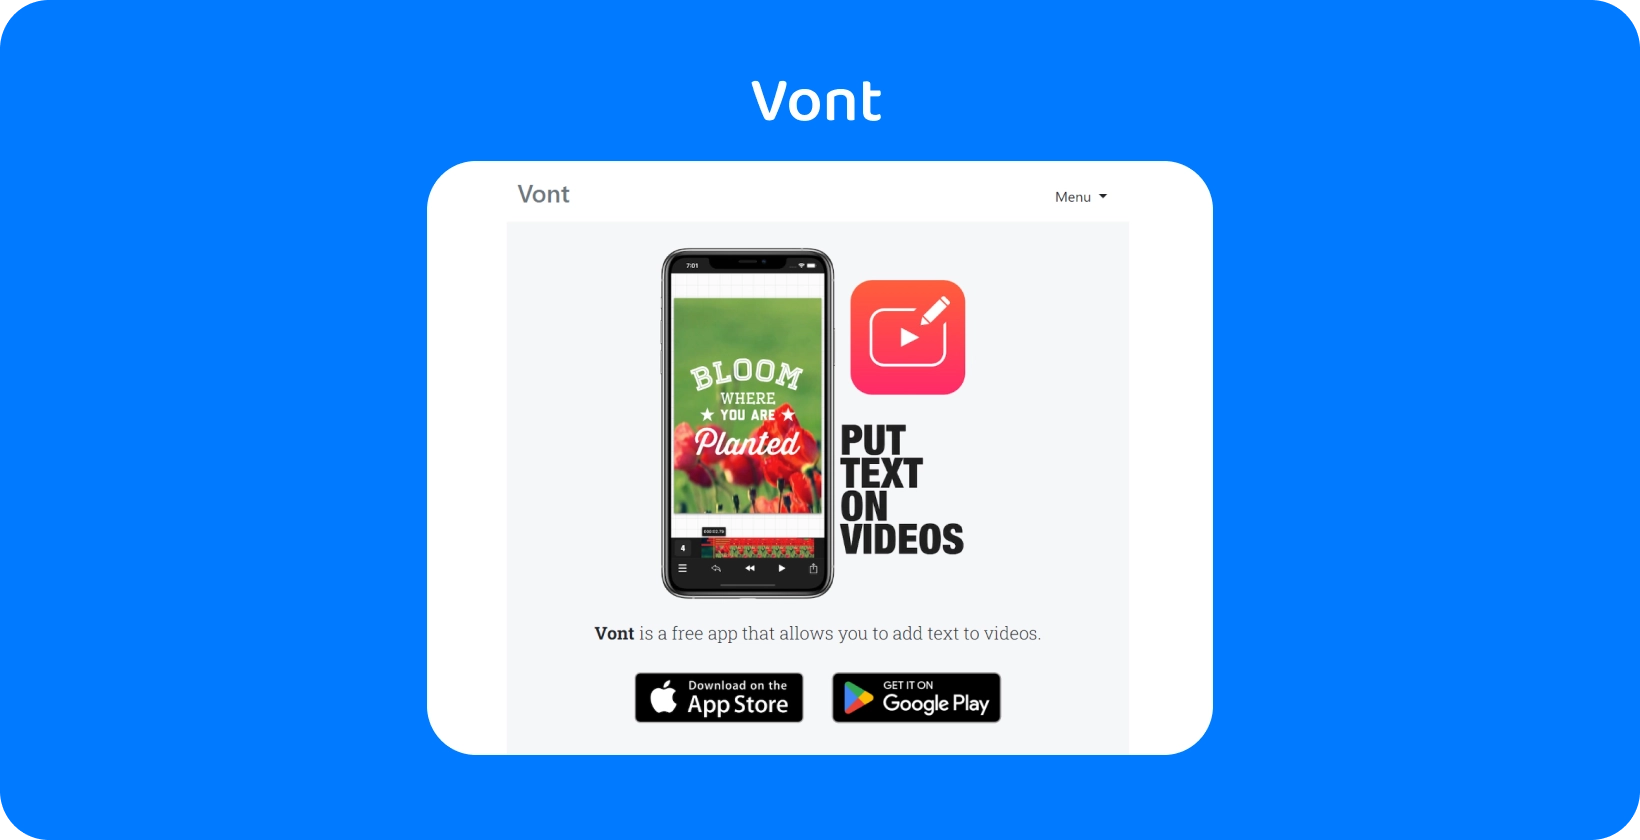 Smartphone che visualizza l'interfaccia dell'app Vont, evidenziando la sua funzione per aggiungere testo ai video, disponibile su App Store e Google Play